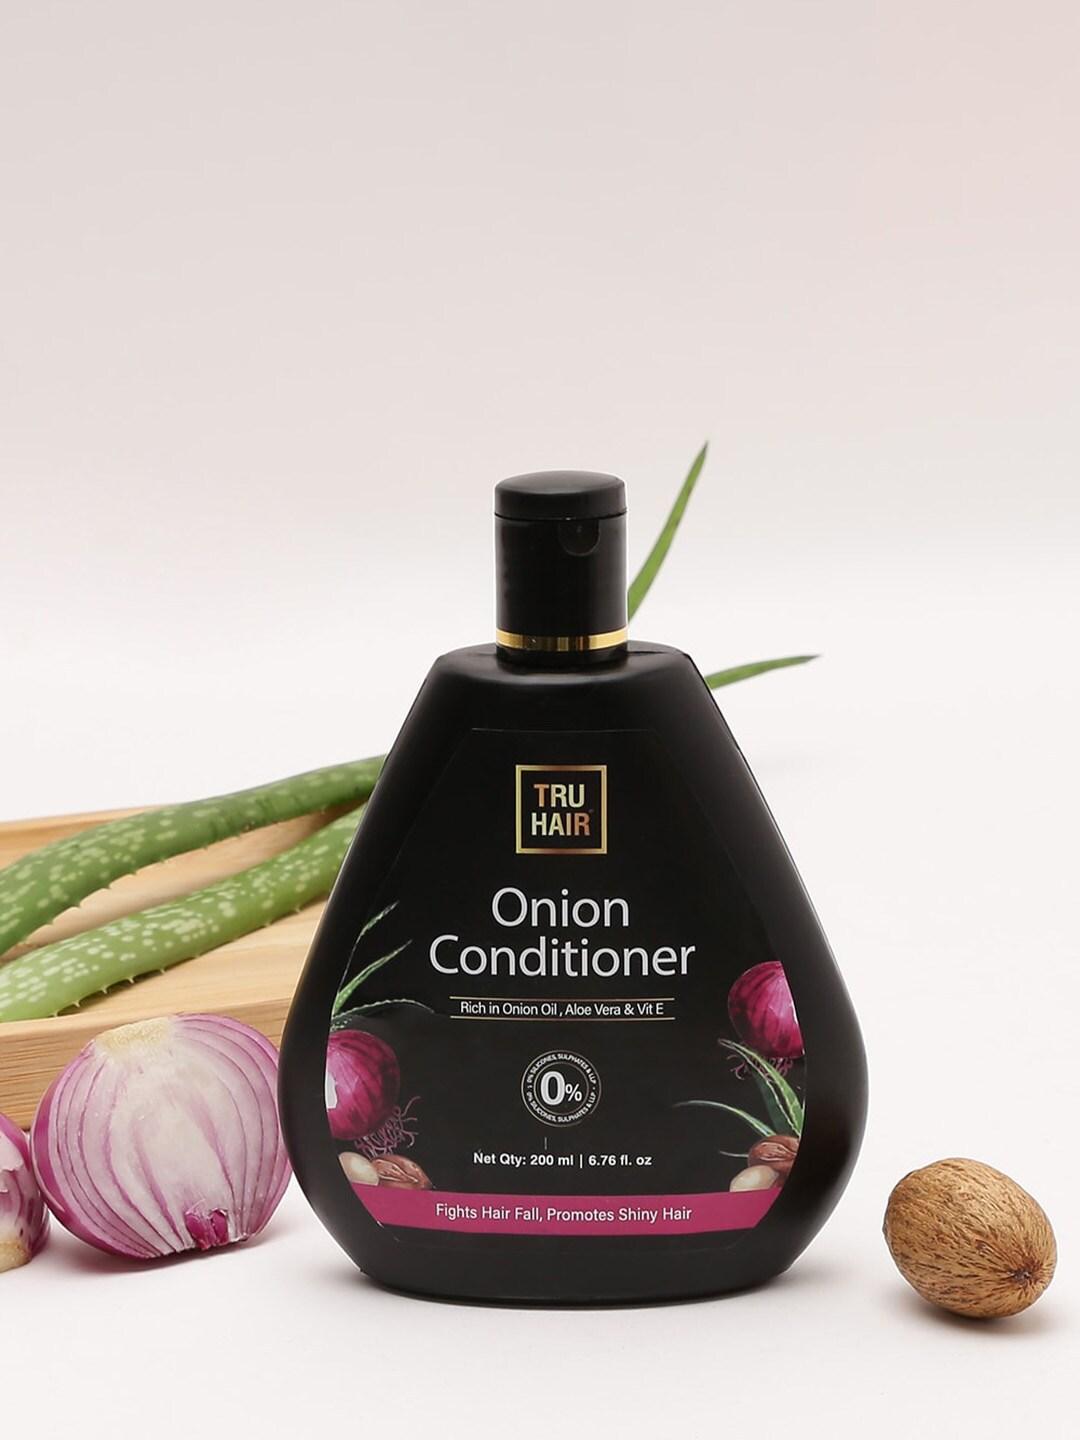 TRU HAIR Onion Conditioner with Aloe Vera & Vitamin E - 200ml